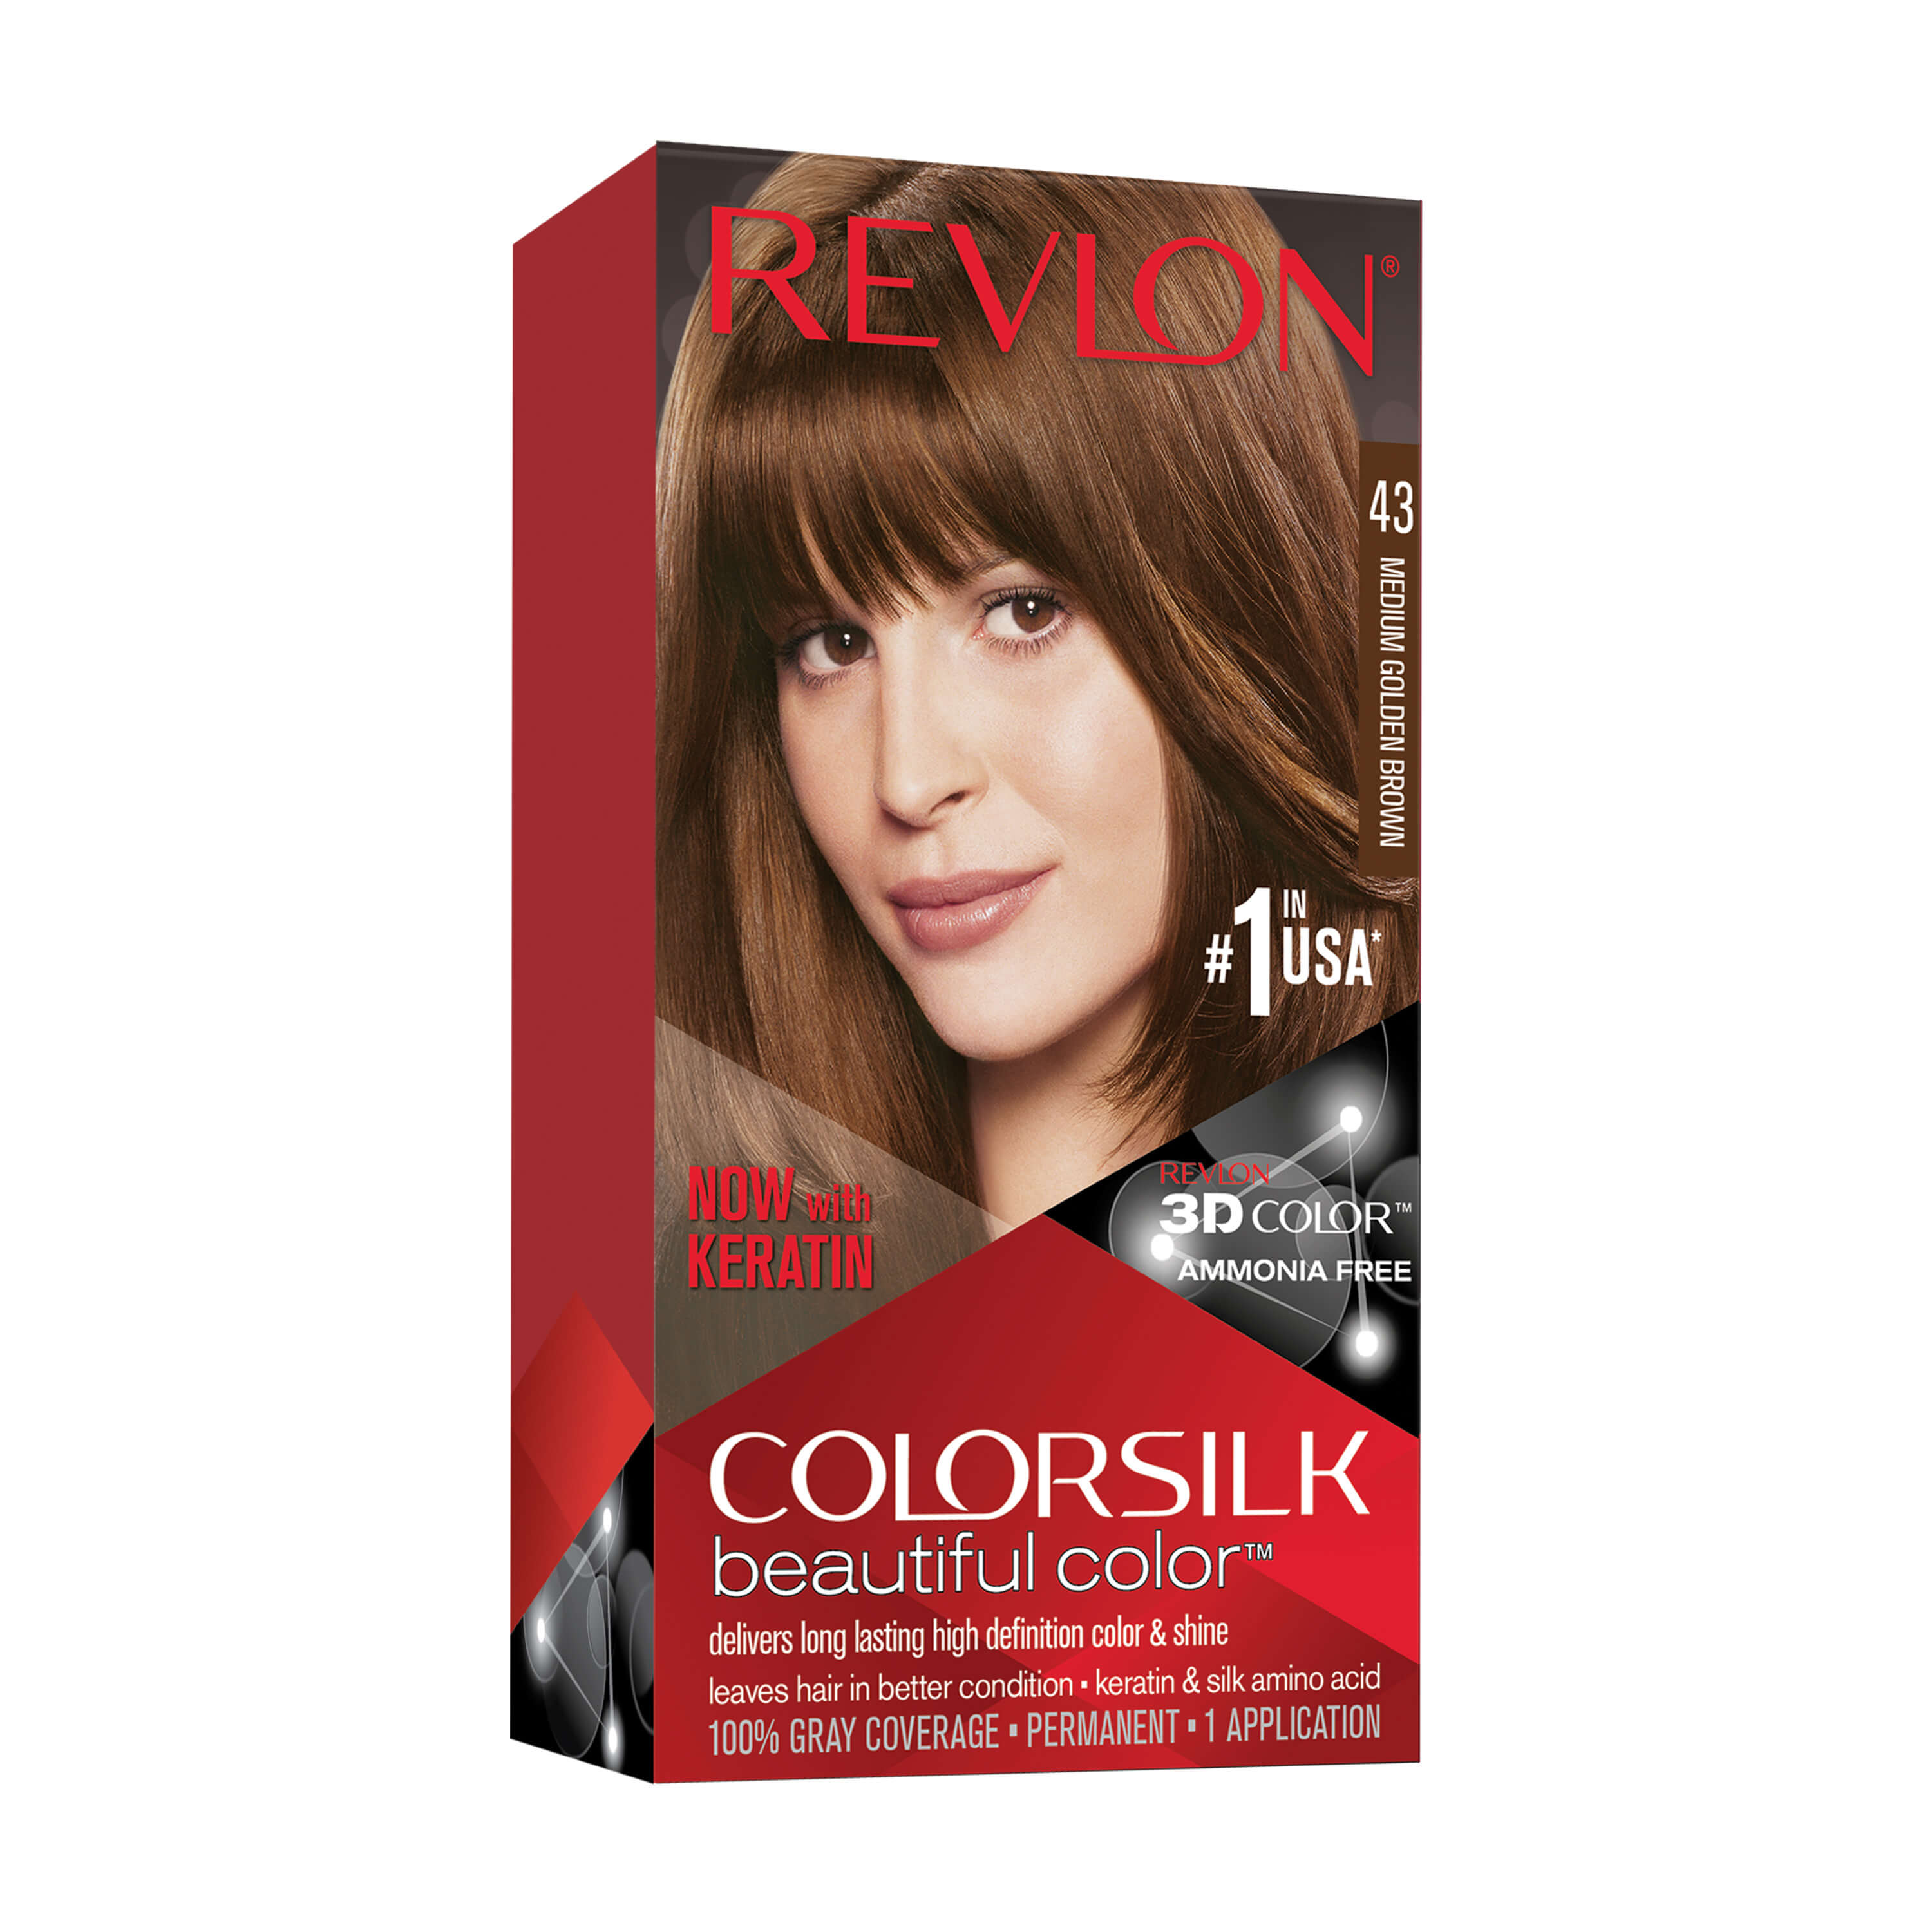 Revlon Colorsilk Beautiful Color Permanent Hair Dye - Dark Brown